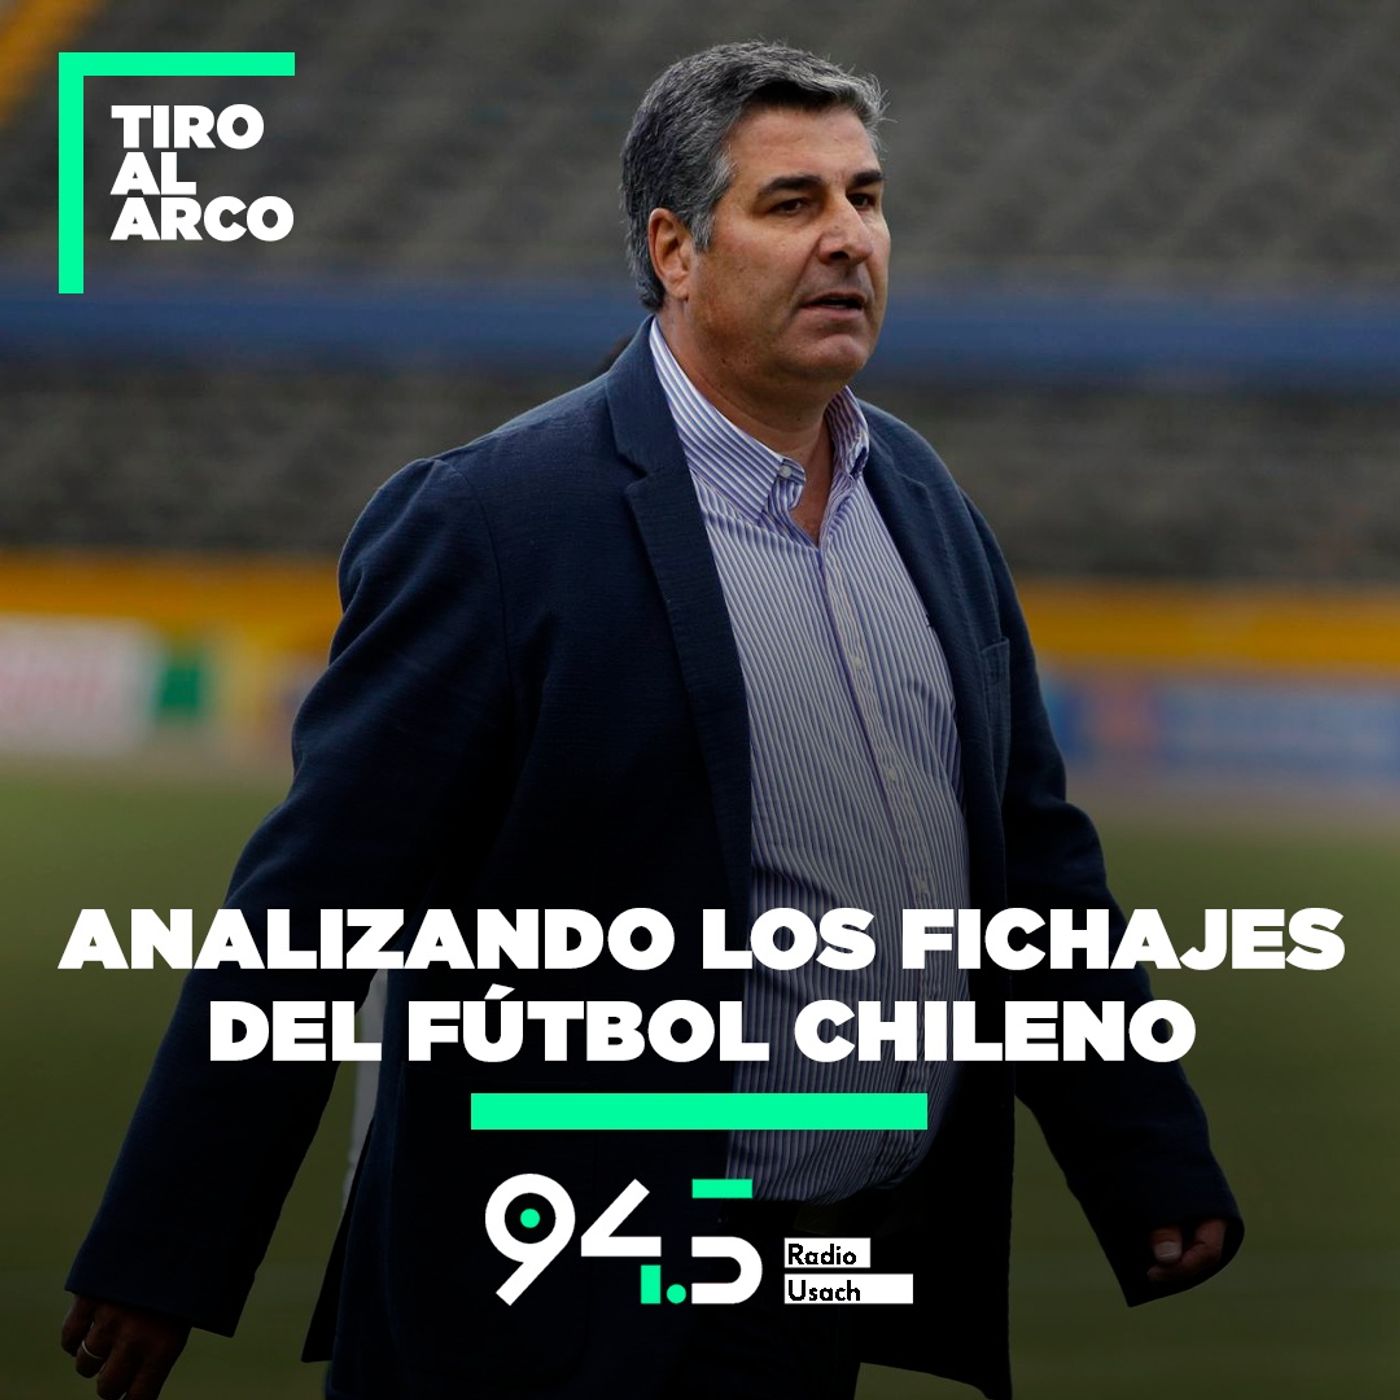 Analizando los fichajes del fútbol chileno